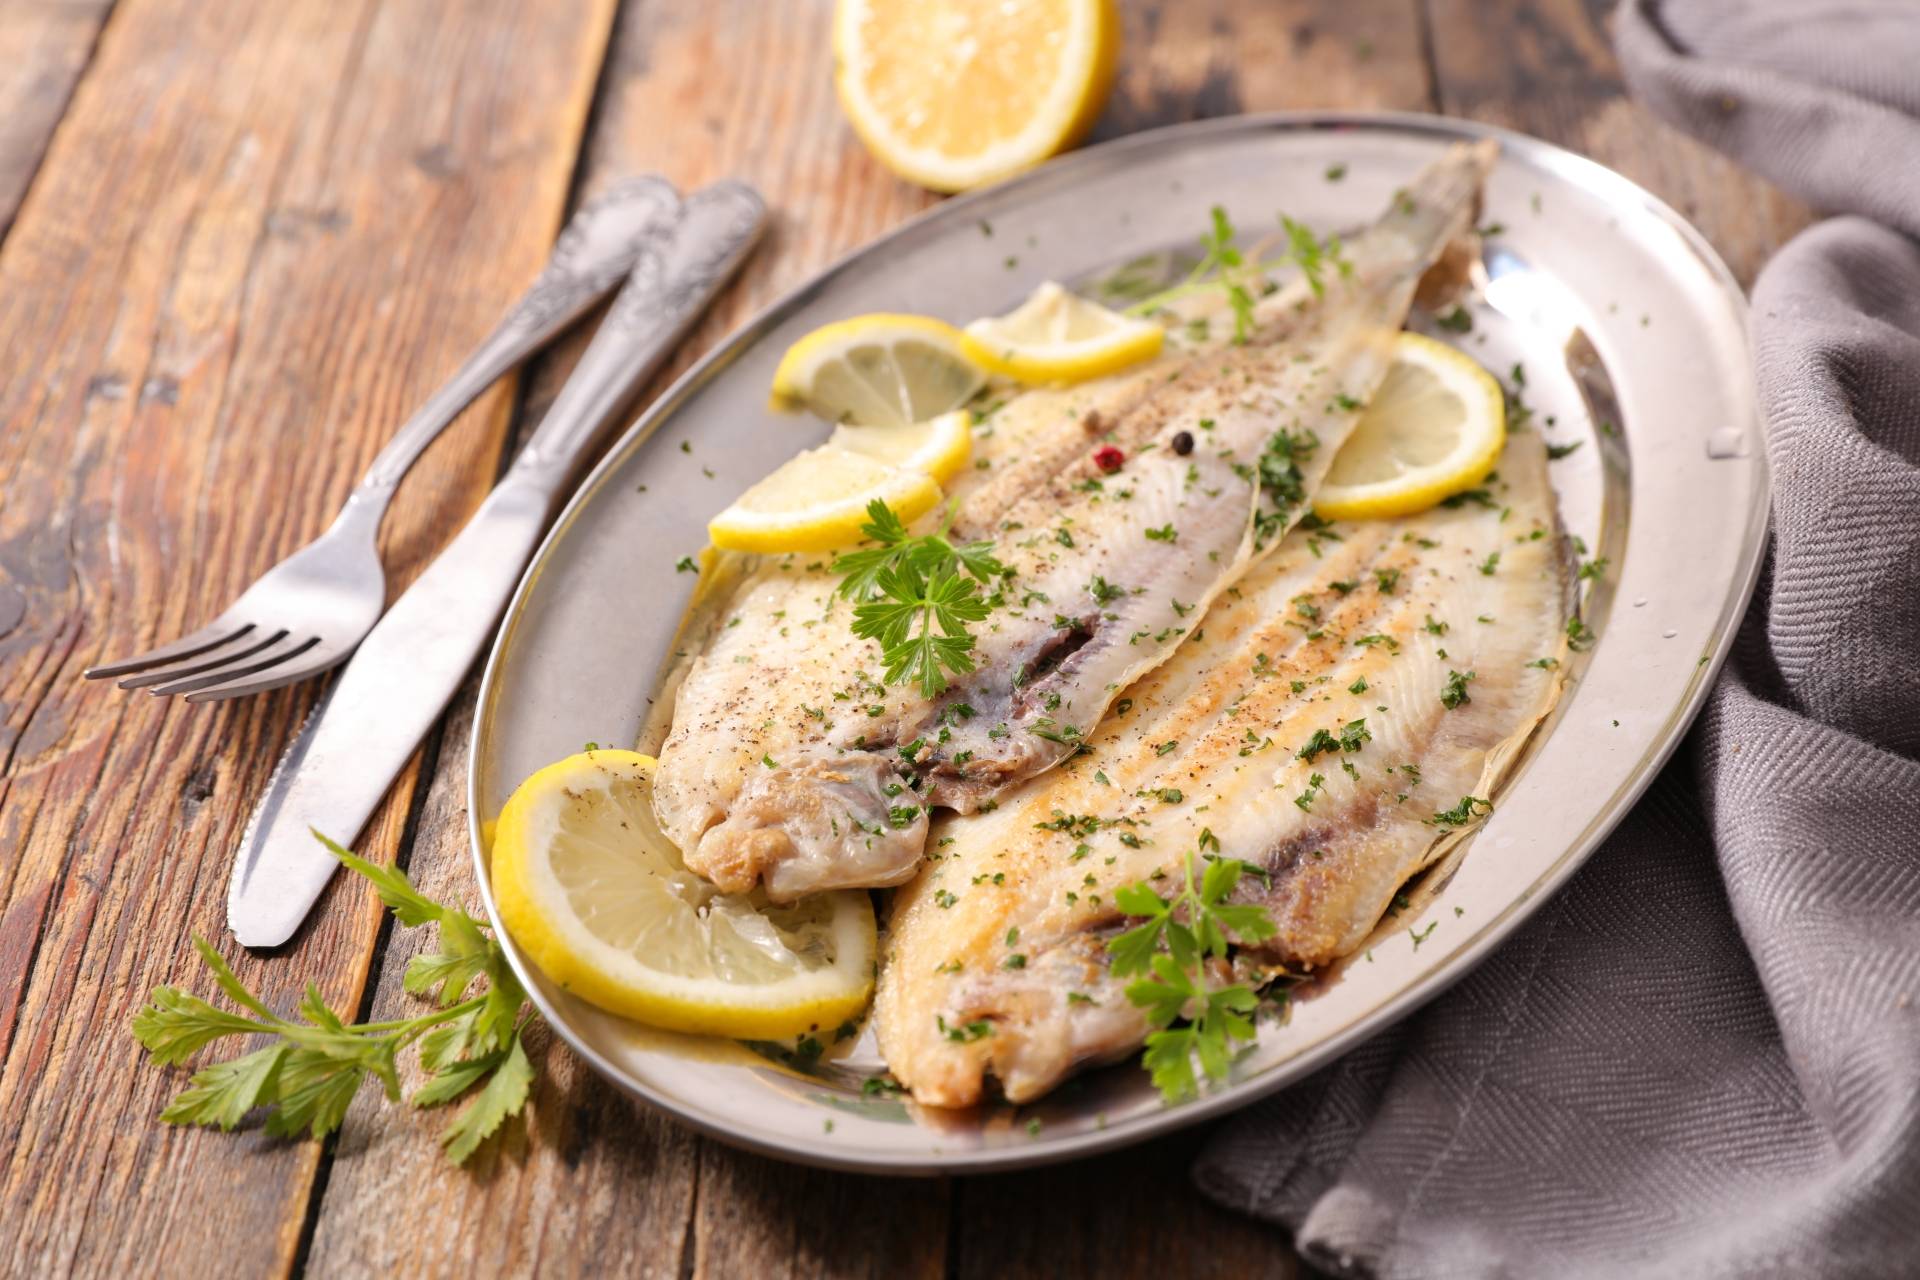 Dieta przeciwgrzybicza - jak leczyć kandydozę, czyli grzybicę układu pokarmowego? grillowana ryba saute z cytryną.